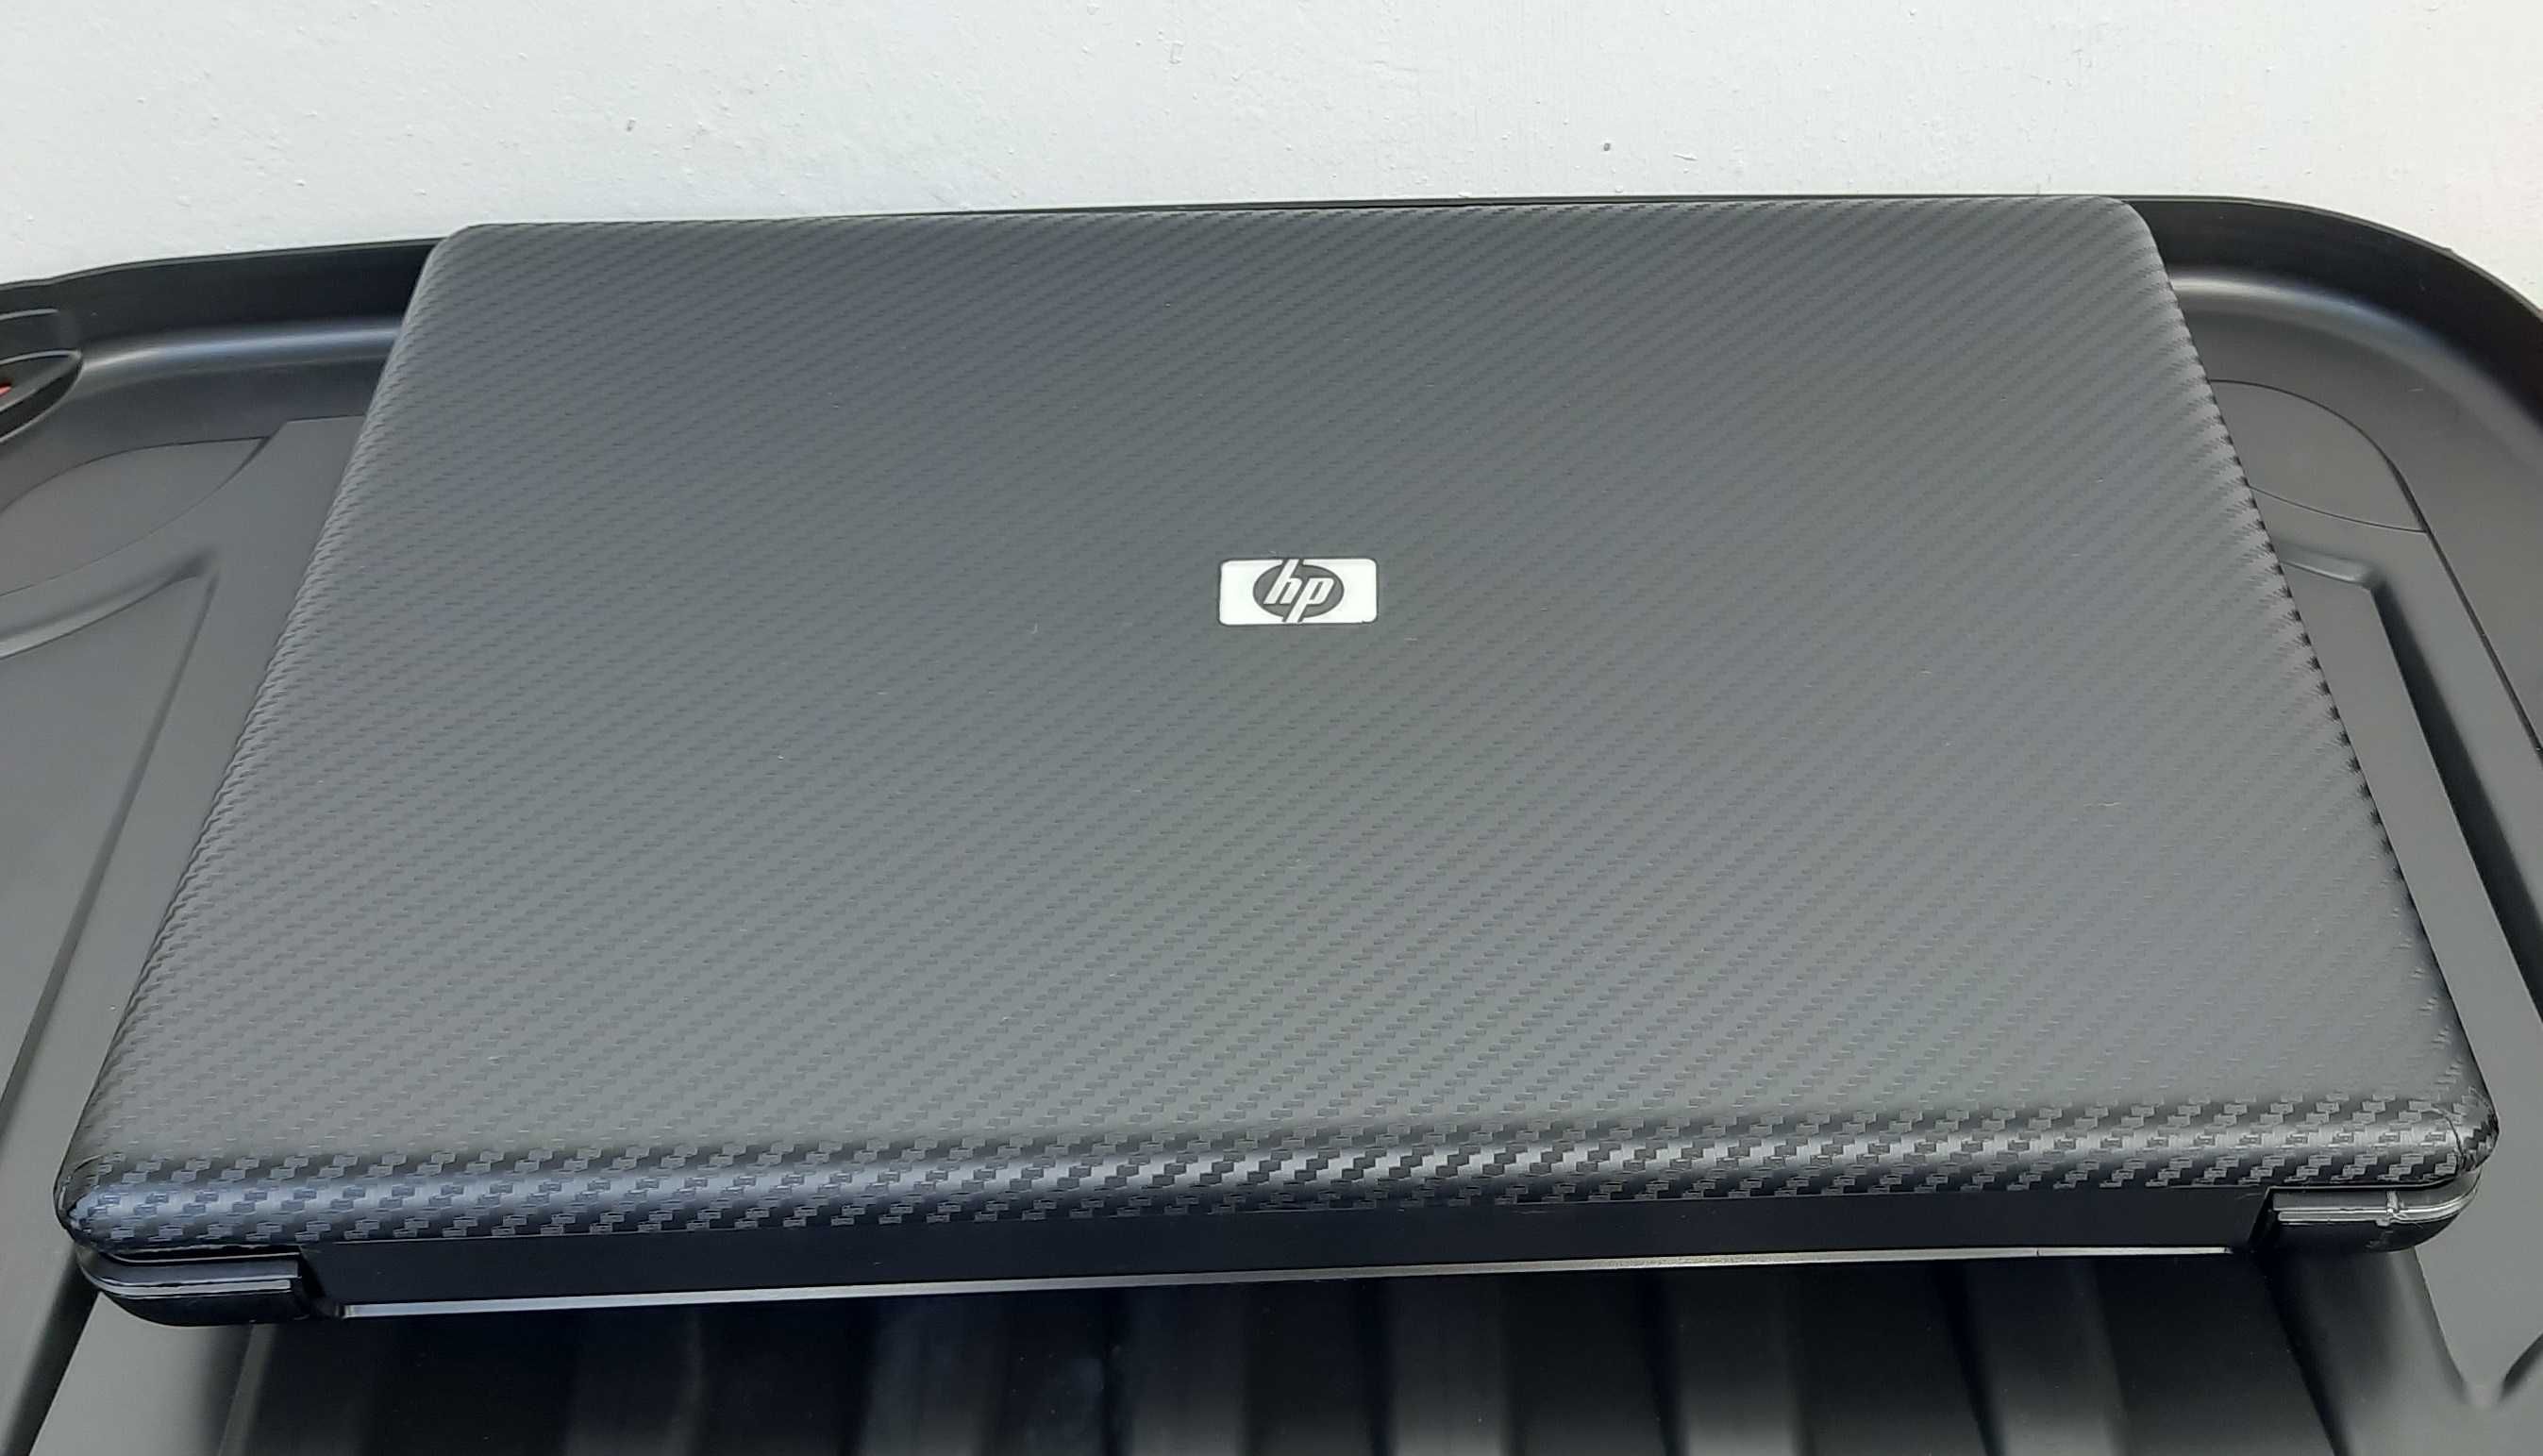 Ноутбук HP G50 у хорошому стані